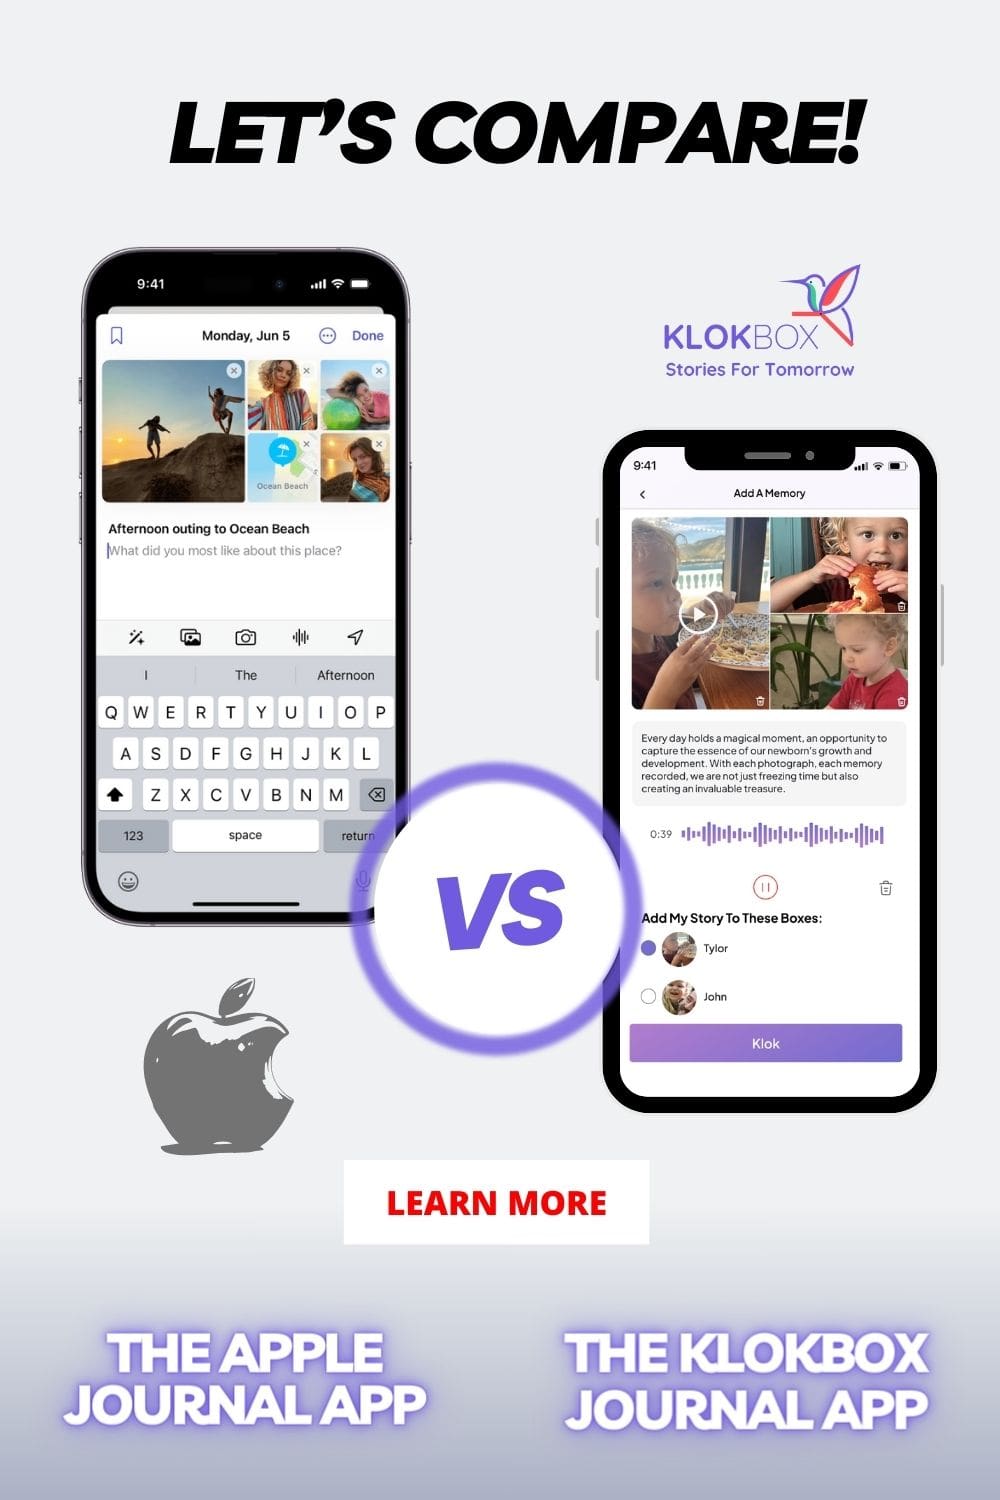 Apple’s Journal App vs. Klokbox App - An In-Depth Analysis